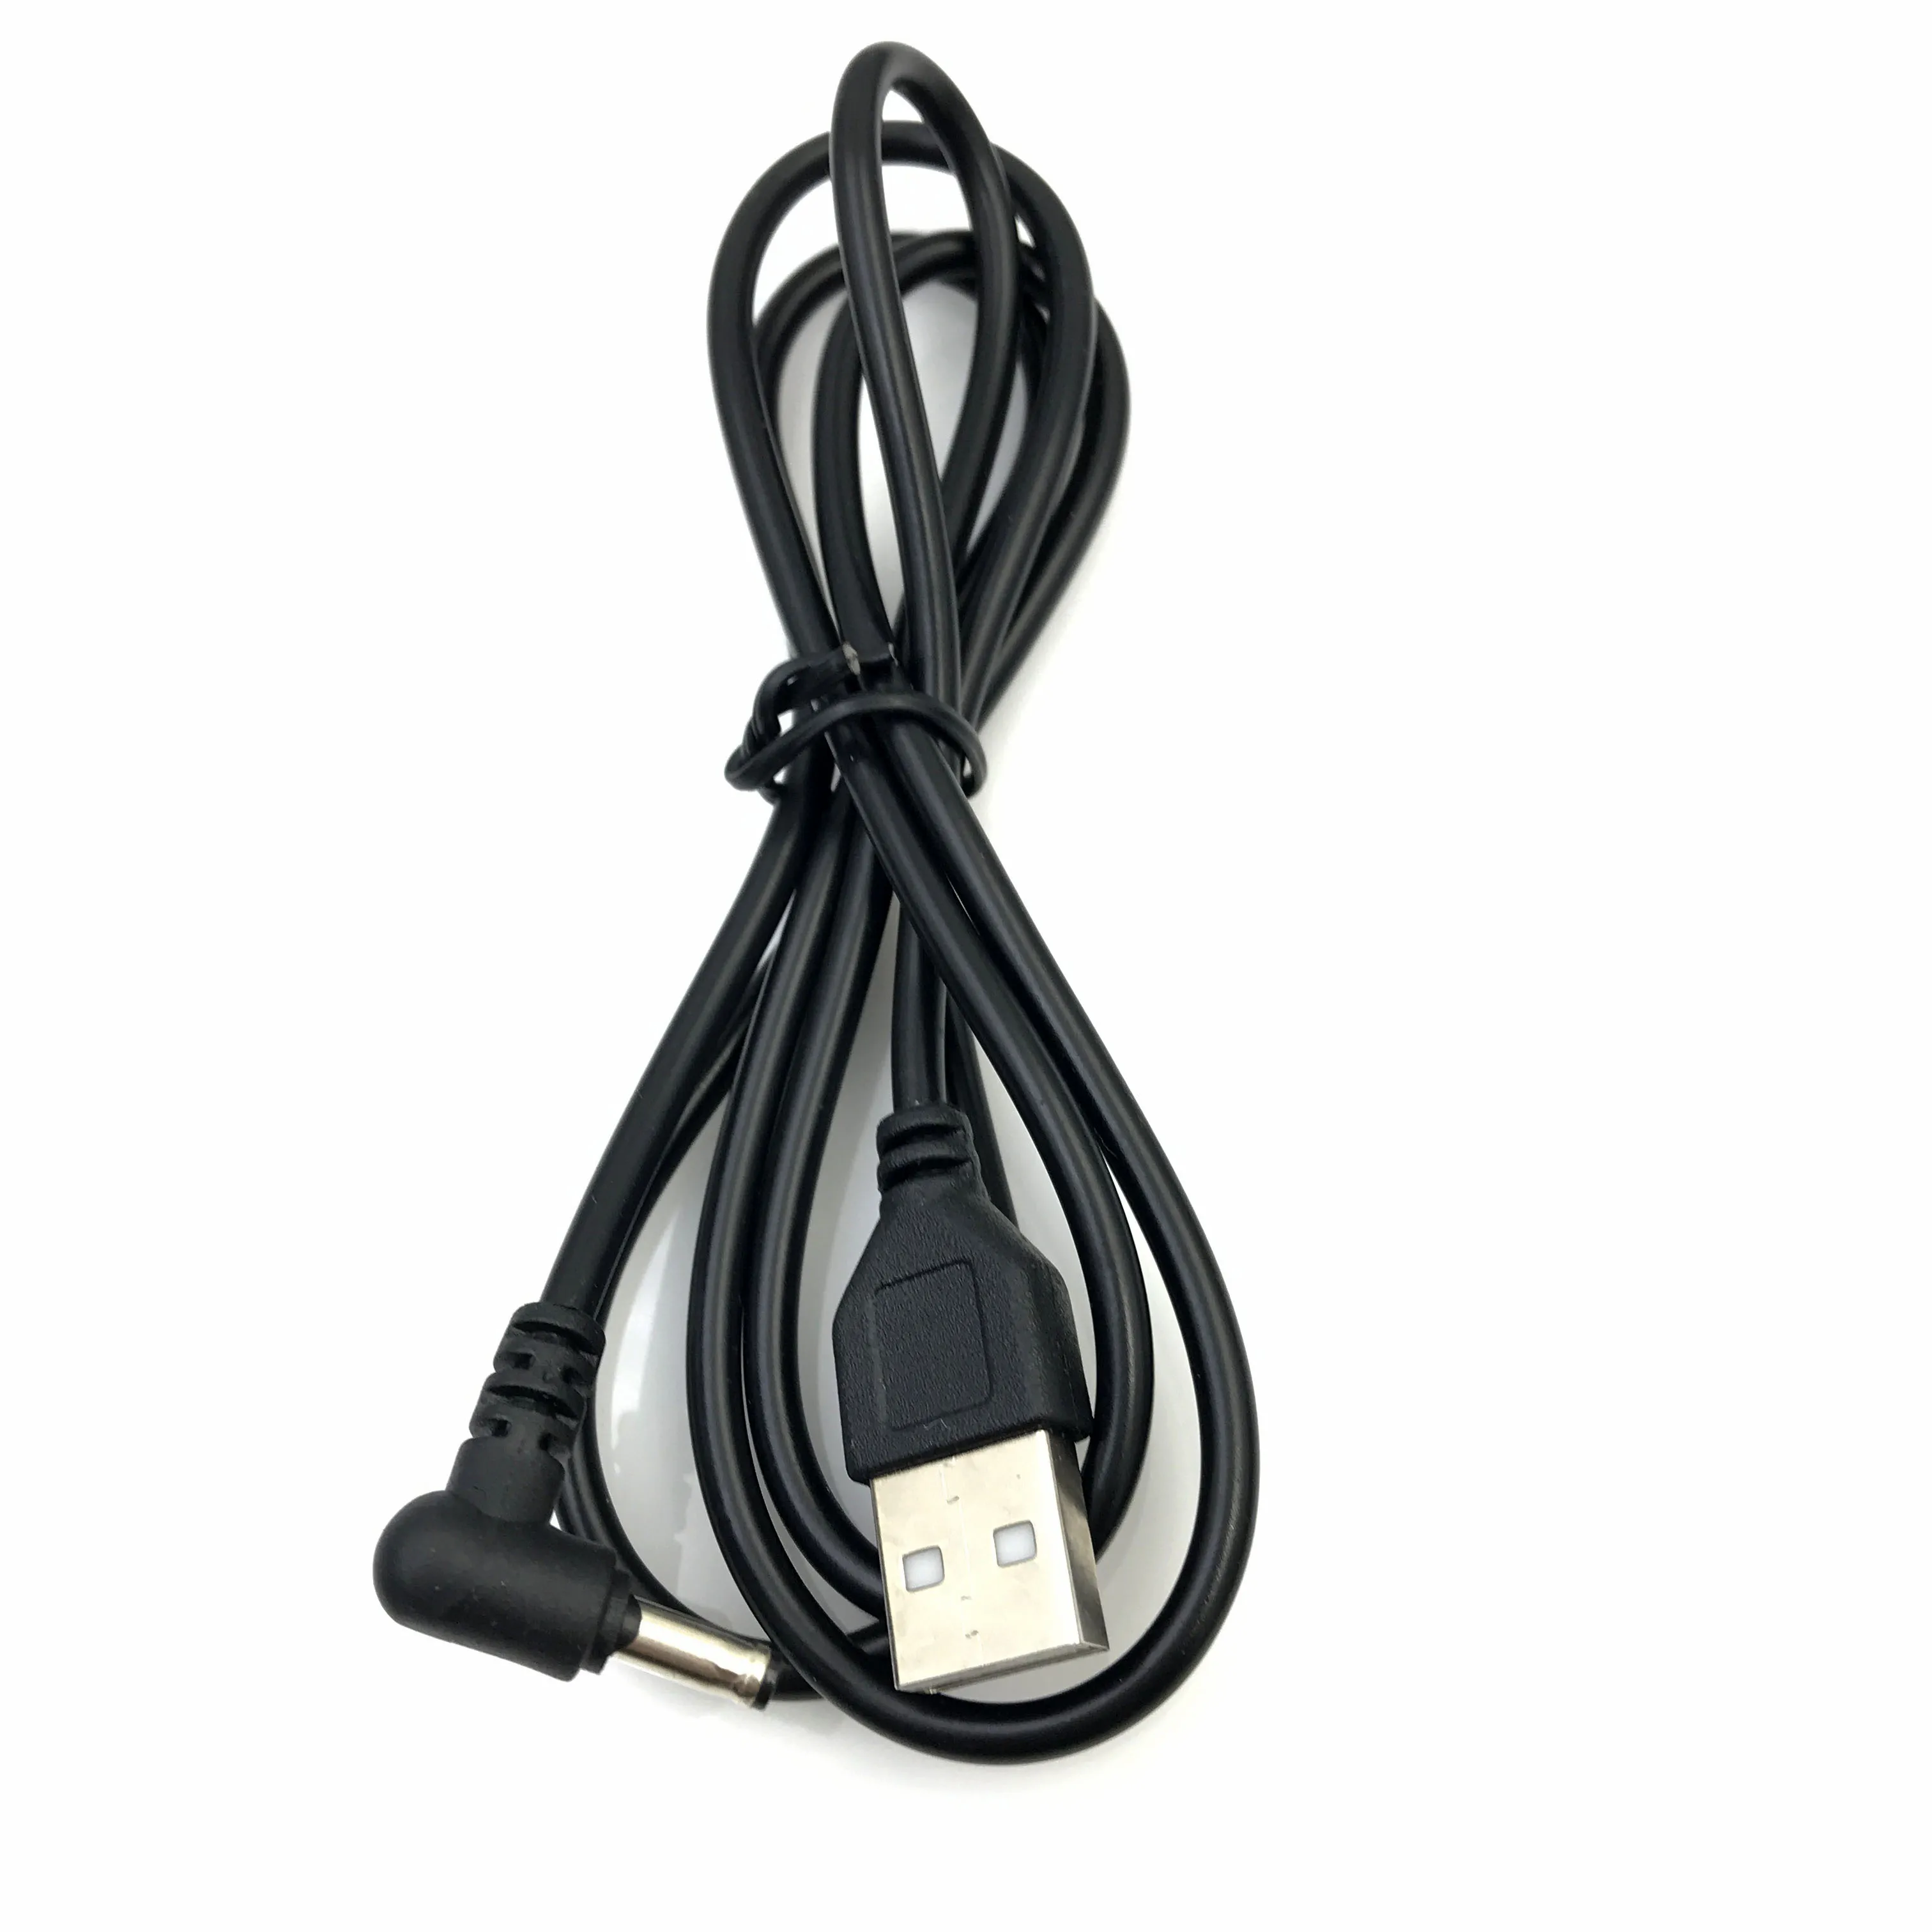 Zadajte Male USB Obrátiť na JEDNOSMERNÝ prúd Samec Konektor Jack Adaptér 90 Stupňov Muž 3,5 mm x 1.35 mm Power Converter Kábel, Kábel USB na 3,5*1.35 4